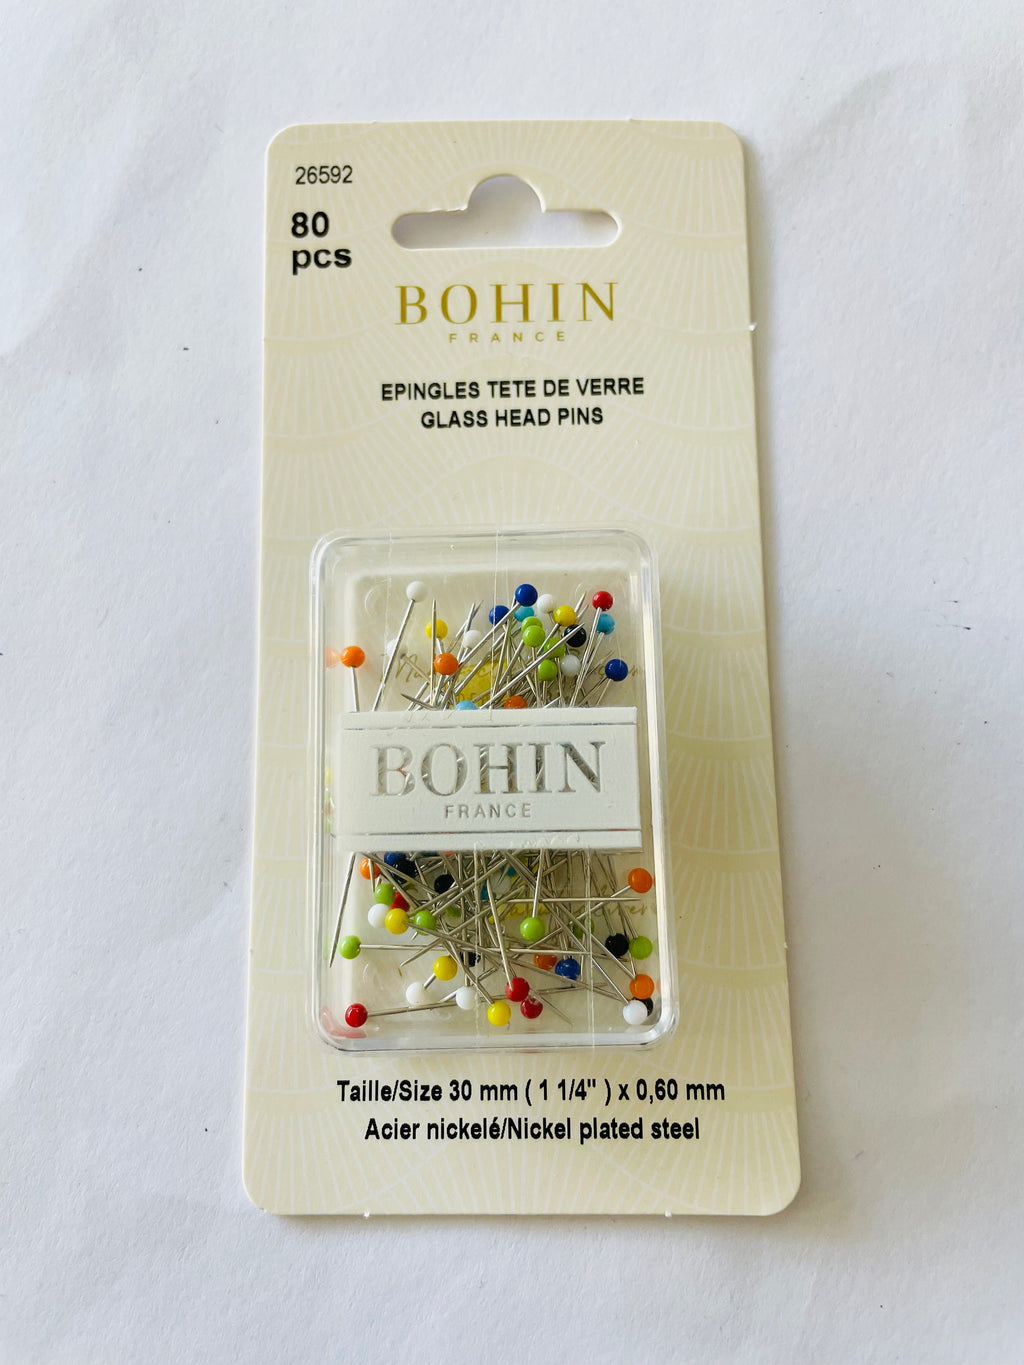 Bohin France Glass Head Pins